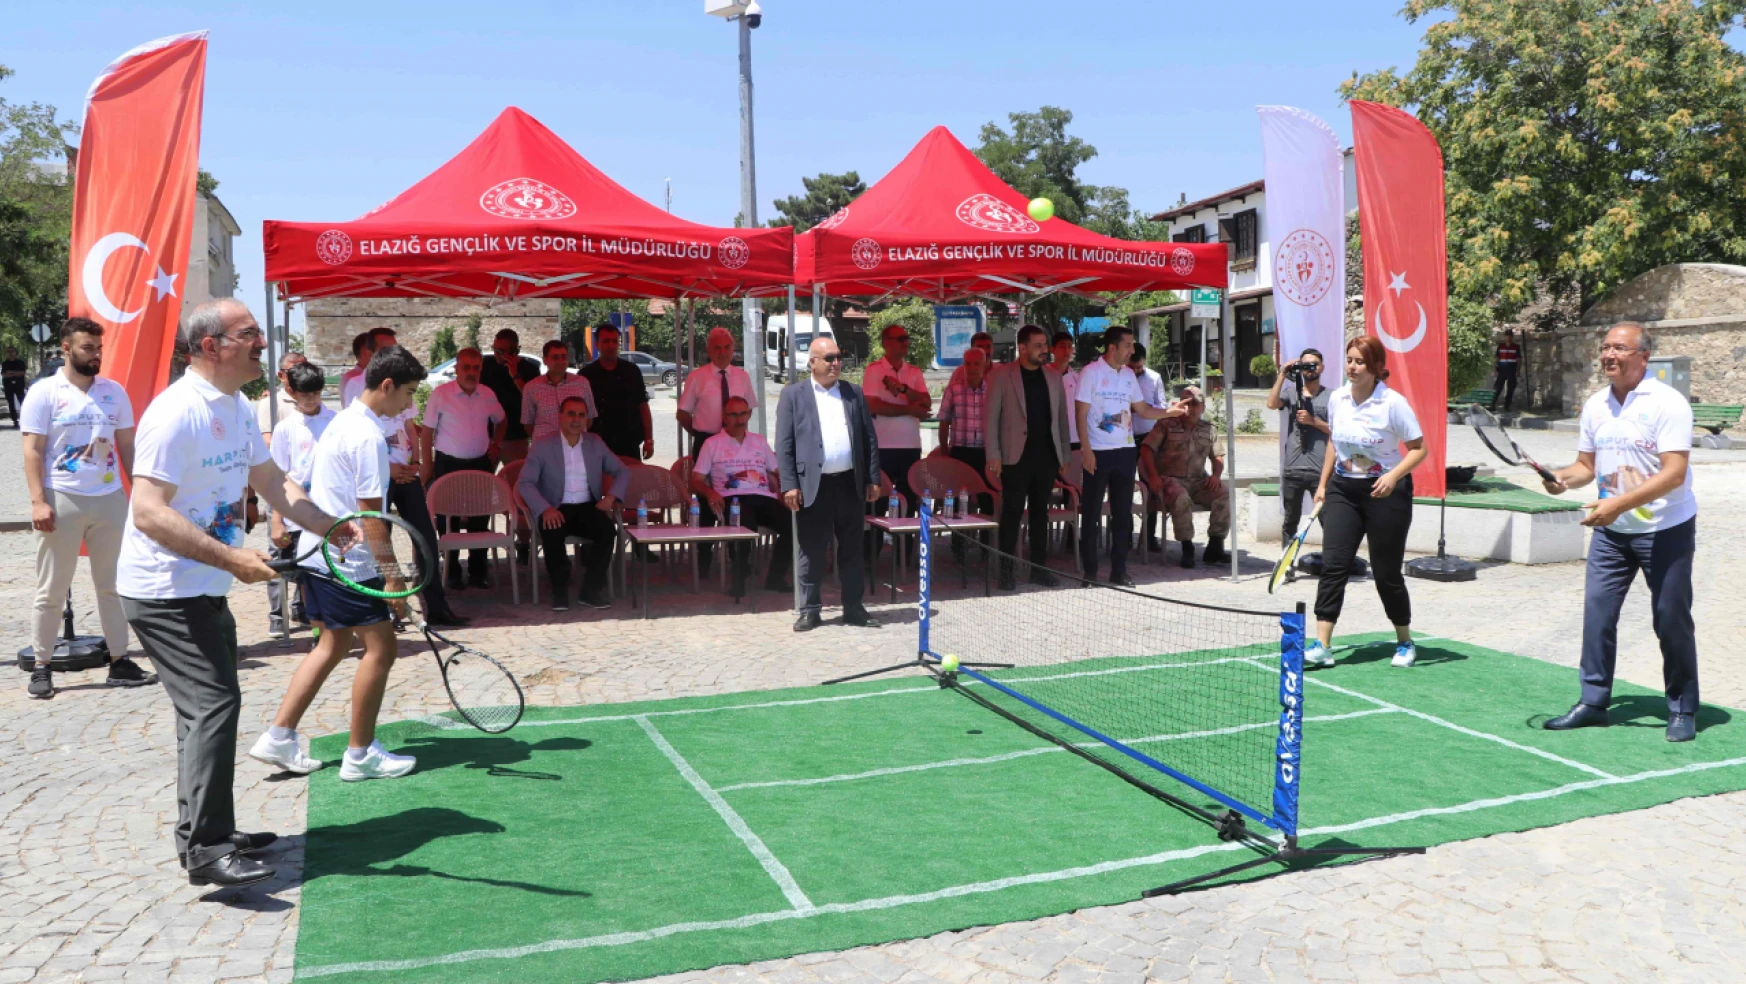 Harput Kupası Tenis Turnuvası, Elazığ'da Başladı